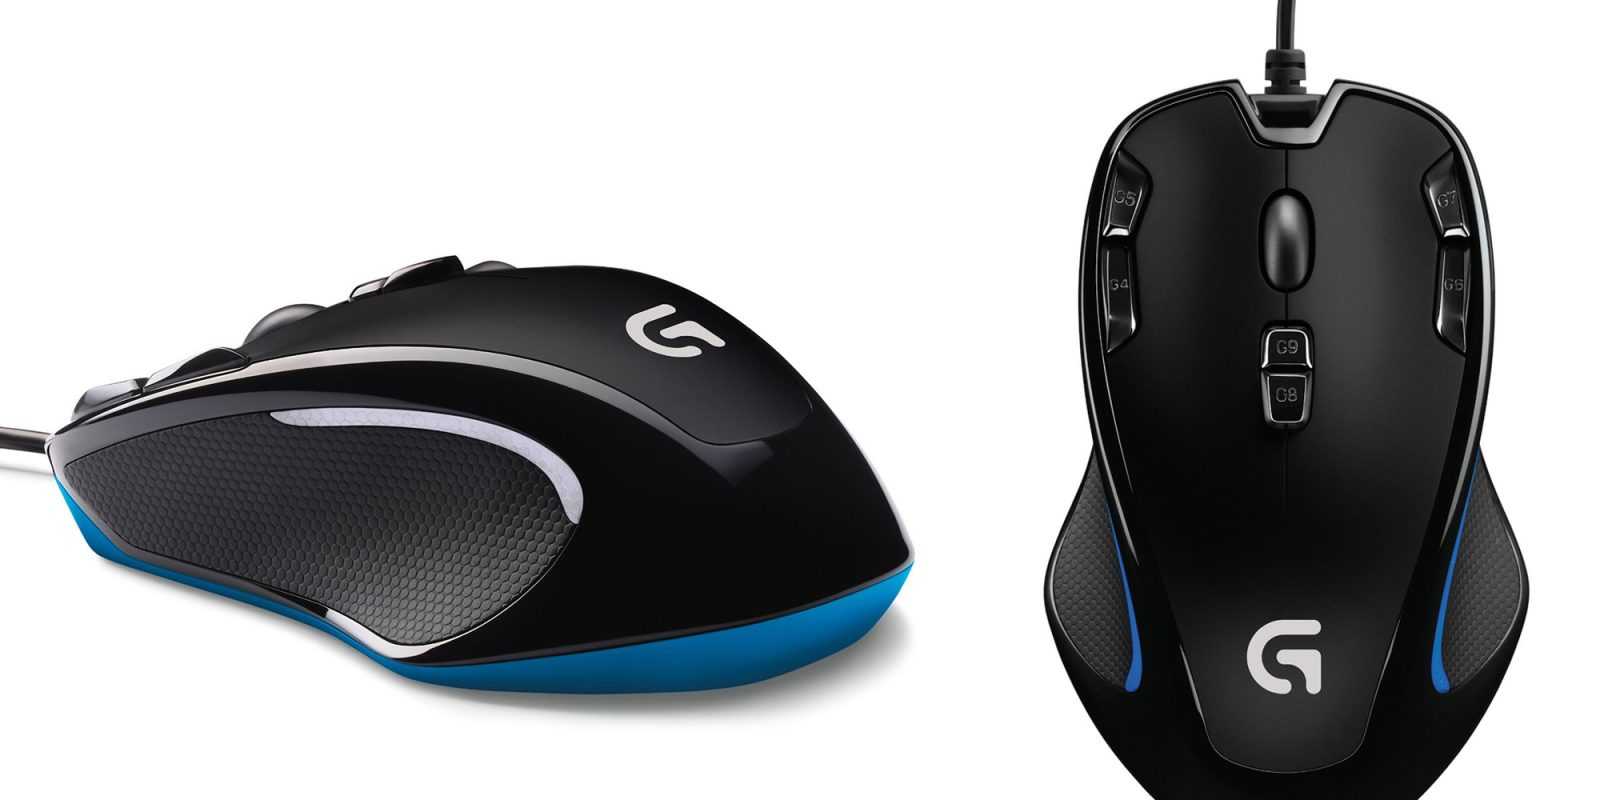 Клавиатура мышь комплект Logitech Gaming Mouse G100s Black USB - подробные характеристики обзоры видео фото Цены в интернет-магазинах где можно купить клавиатуру мышь комплект Logitech Gaming Mouse G100s Black USB